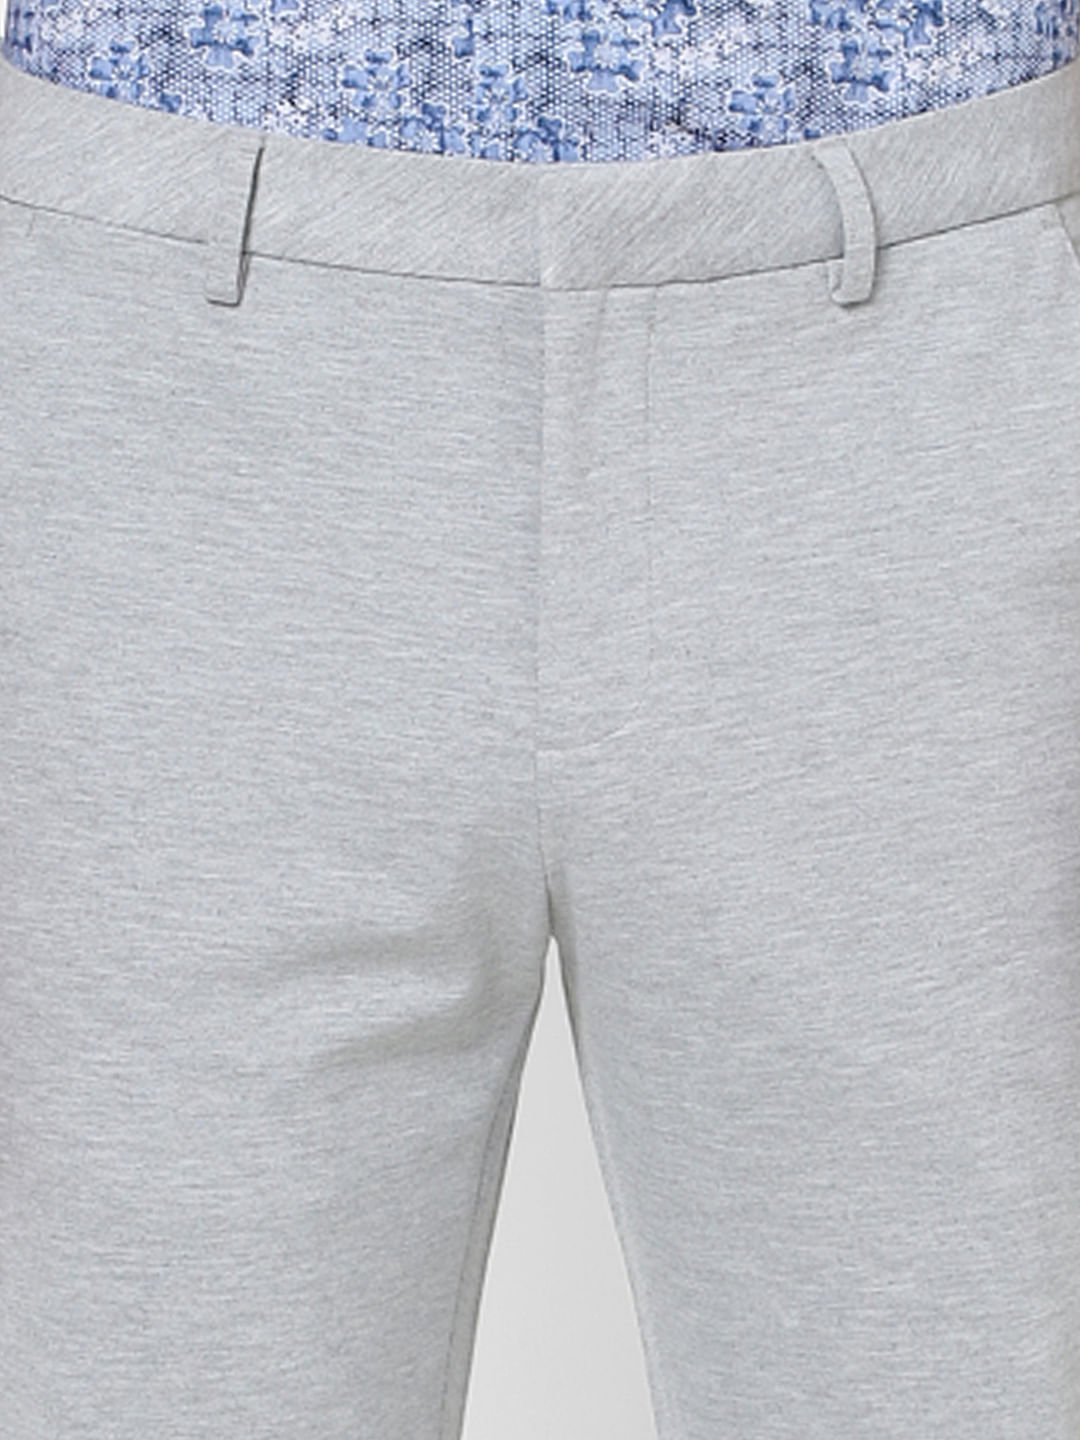 Jack  Jones Casual Trousers  Buy Jack  Jones Grey Trousers 48  OnlineNykaa fashion